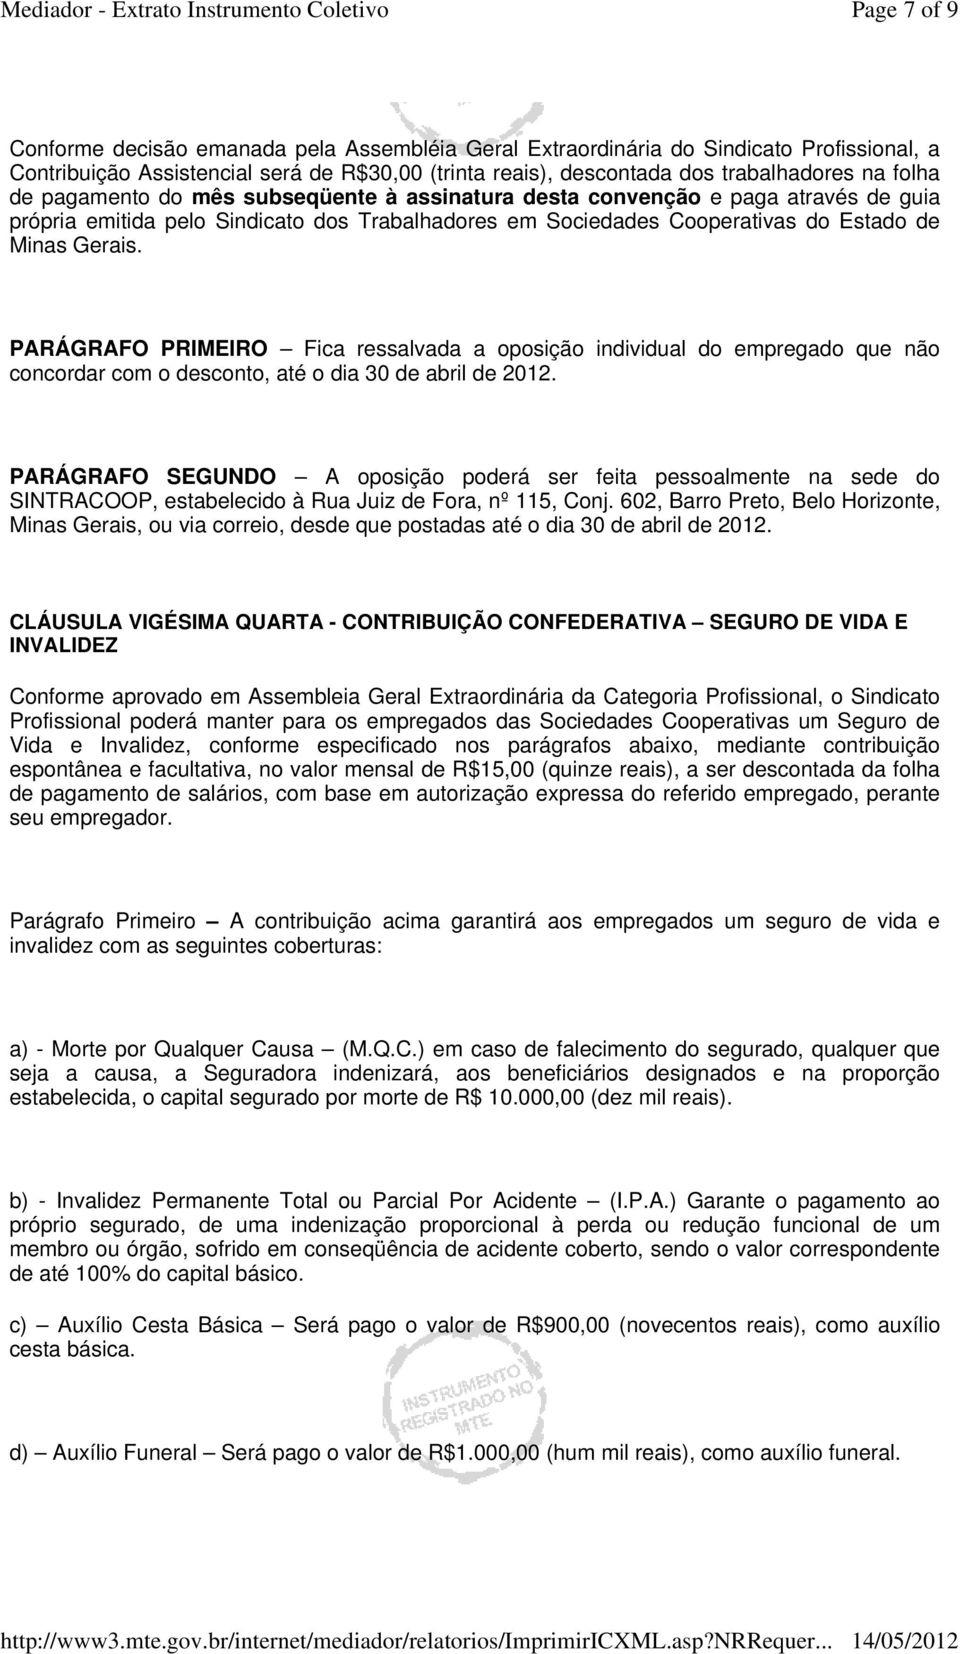 PARÁGRAFO PRIMEIRO Fica ressalvada a oposição individual do empregado que não concordar com o desconto, até o dia 30 de abril de 2012.